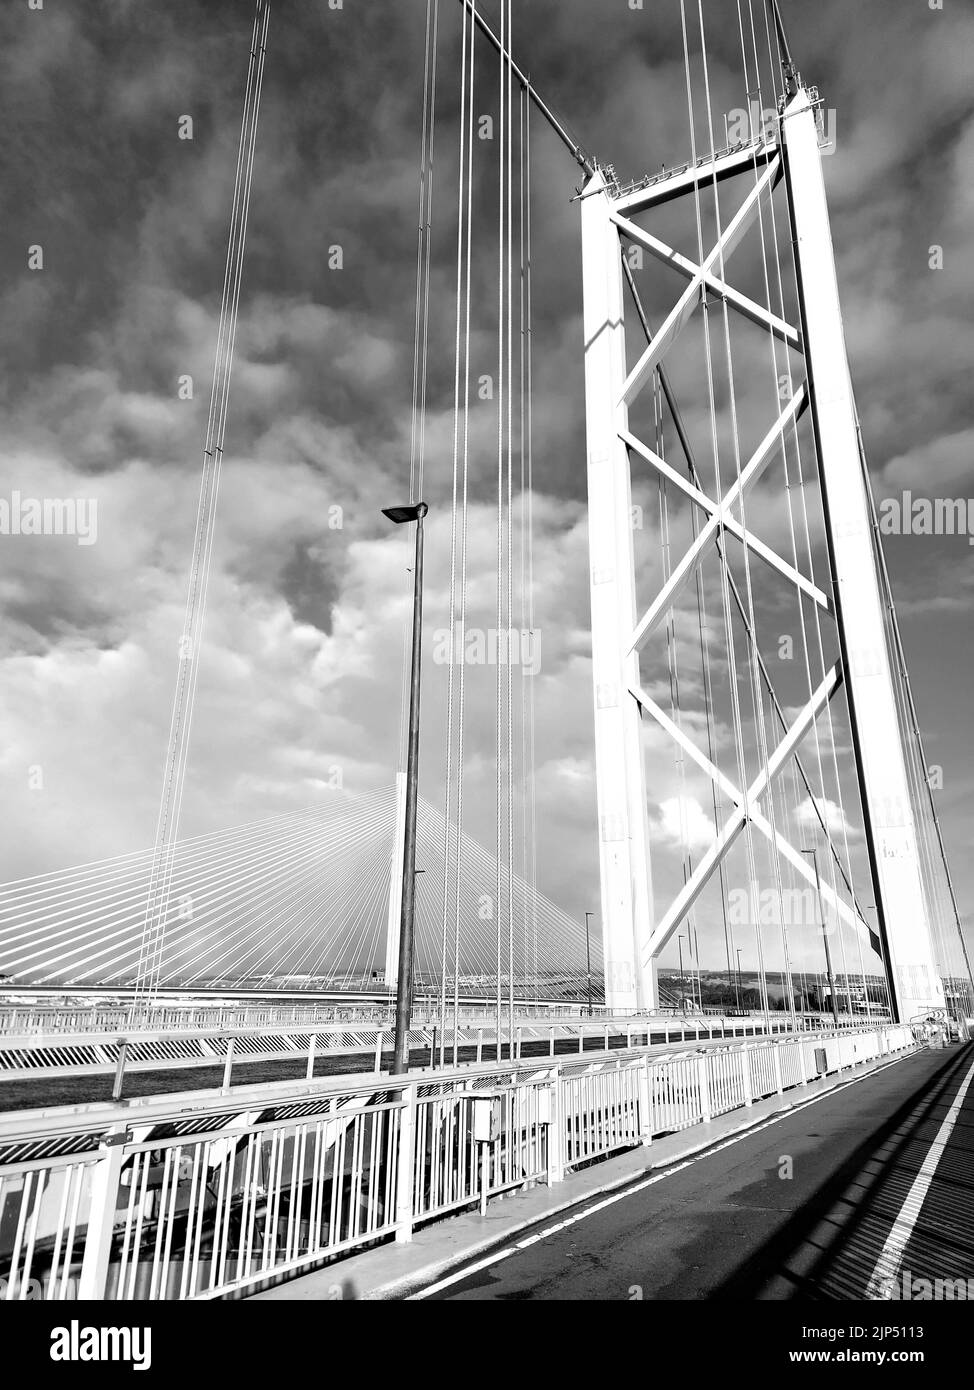 Photo verticale en niveaux de gris du Forth Road Bridge en Écosse Banque D'Images